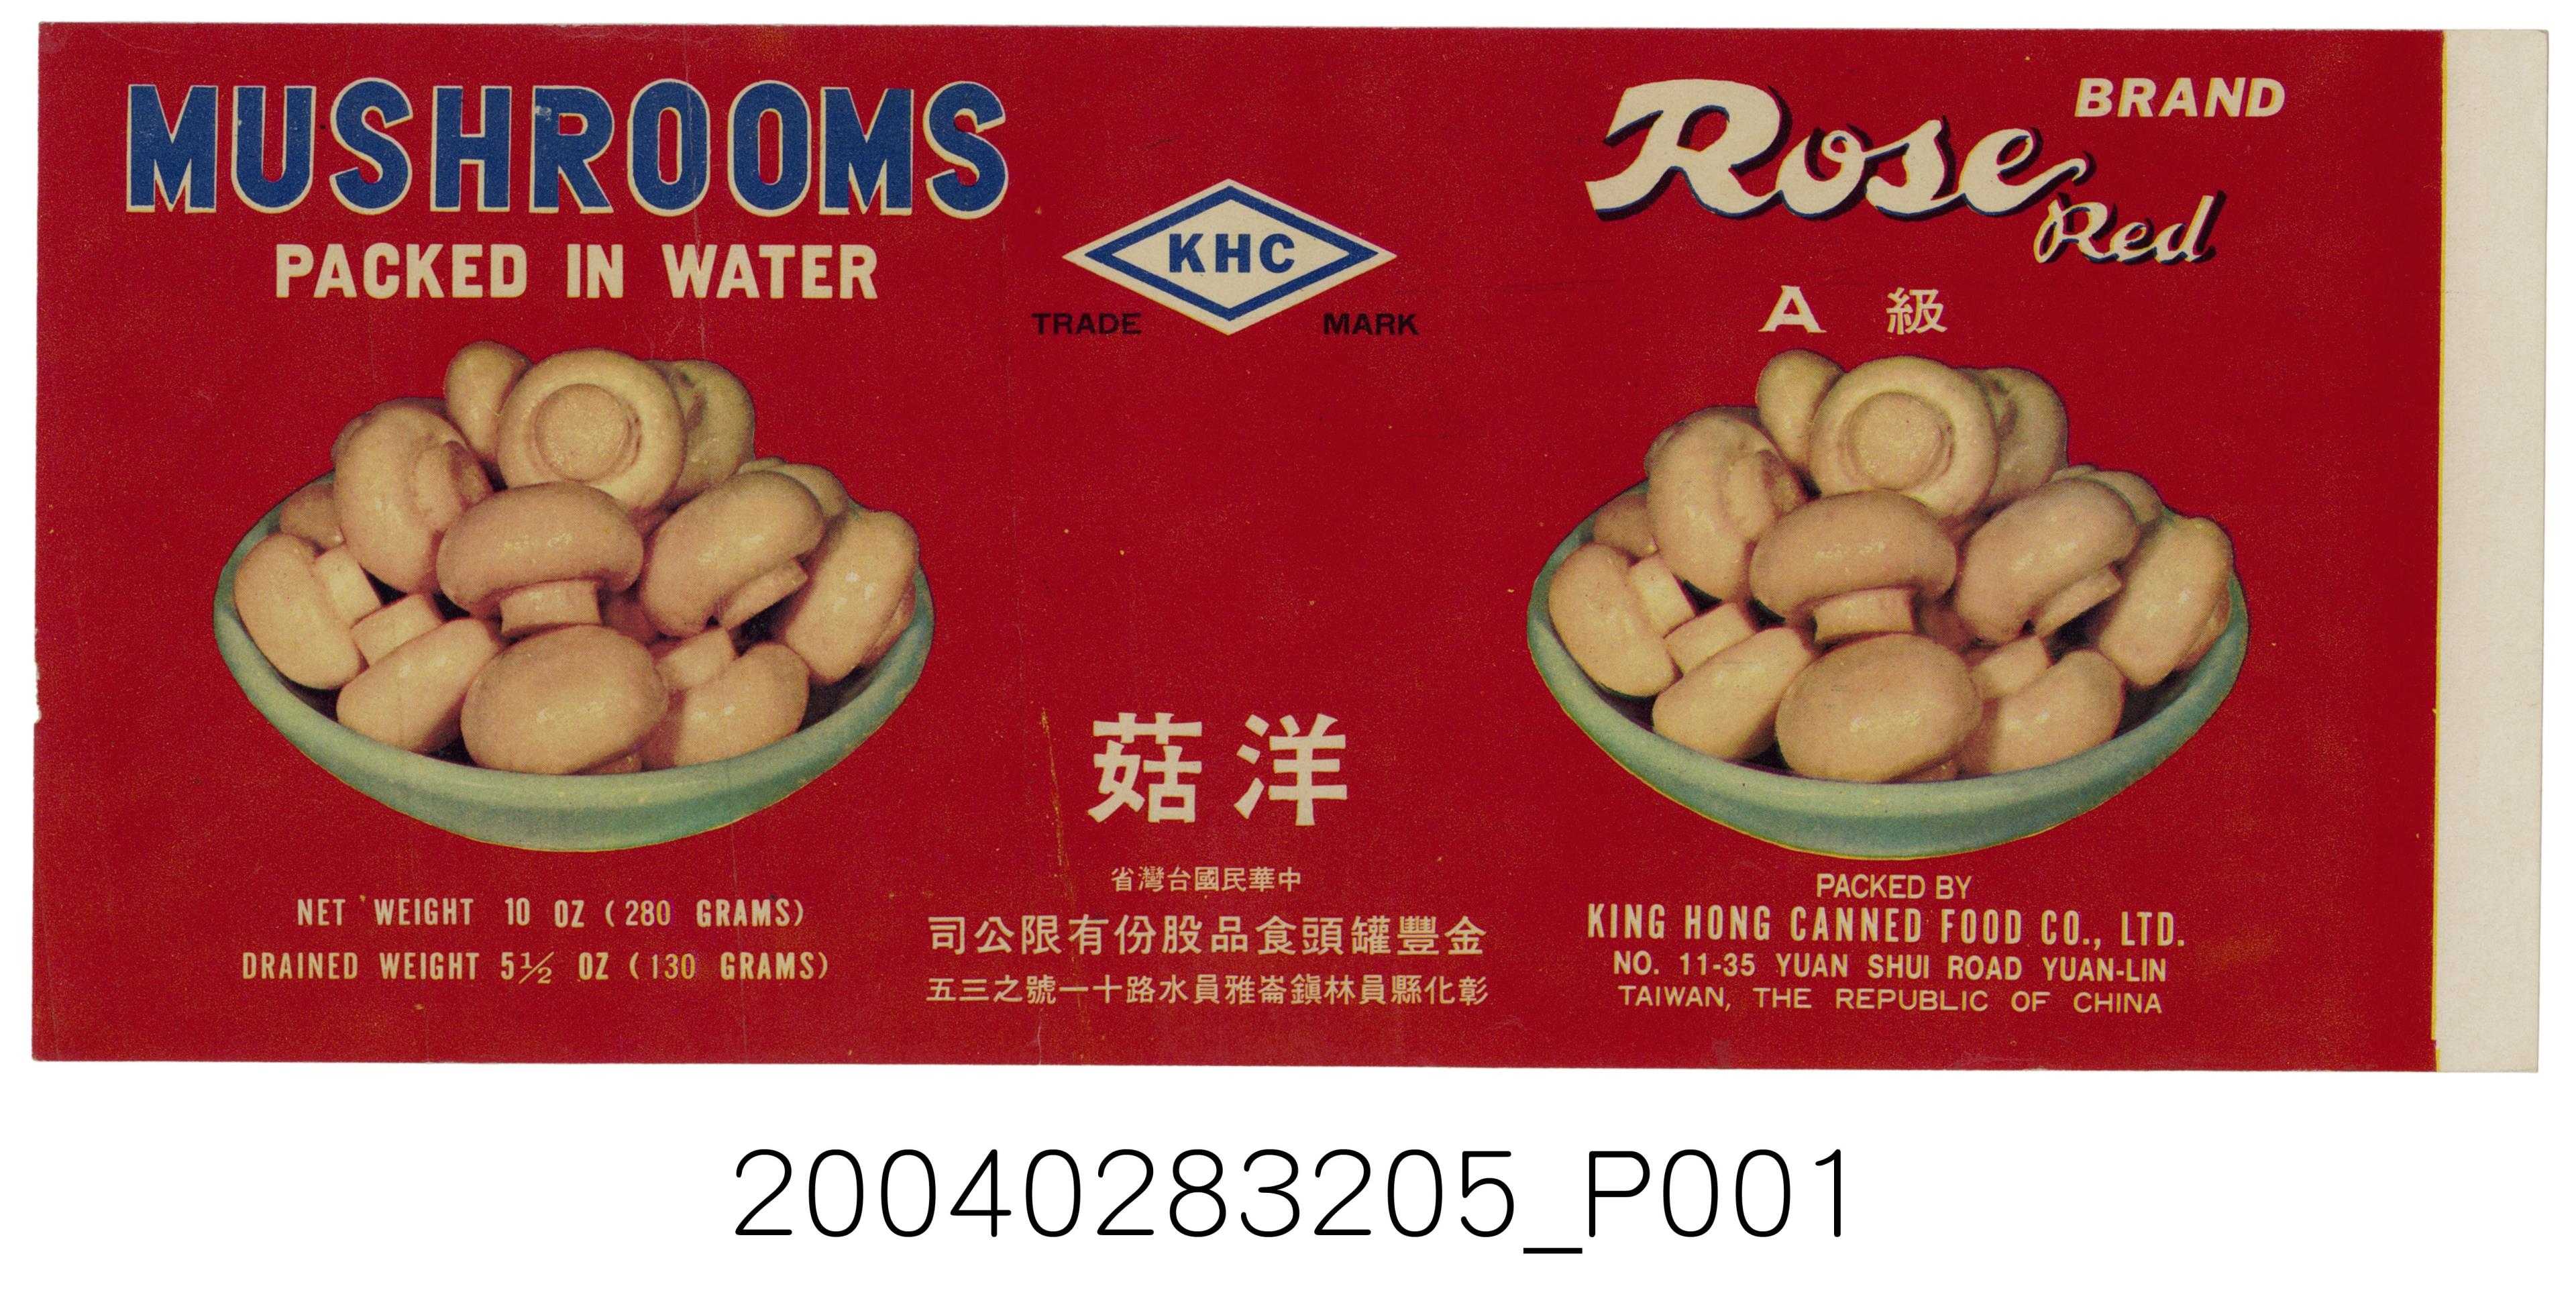 金豐罐頭食品製紅玫瑰牌洋菇罐頭商標 (共1張)